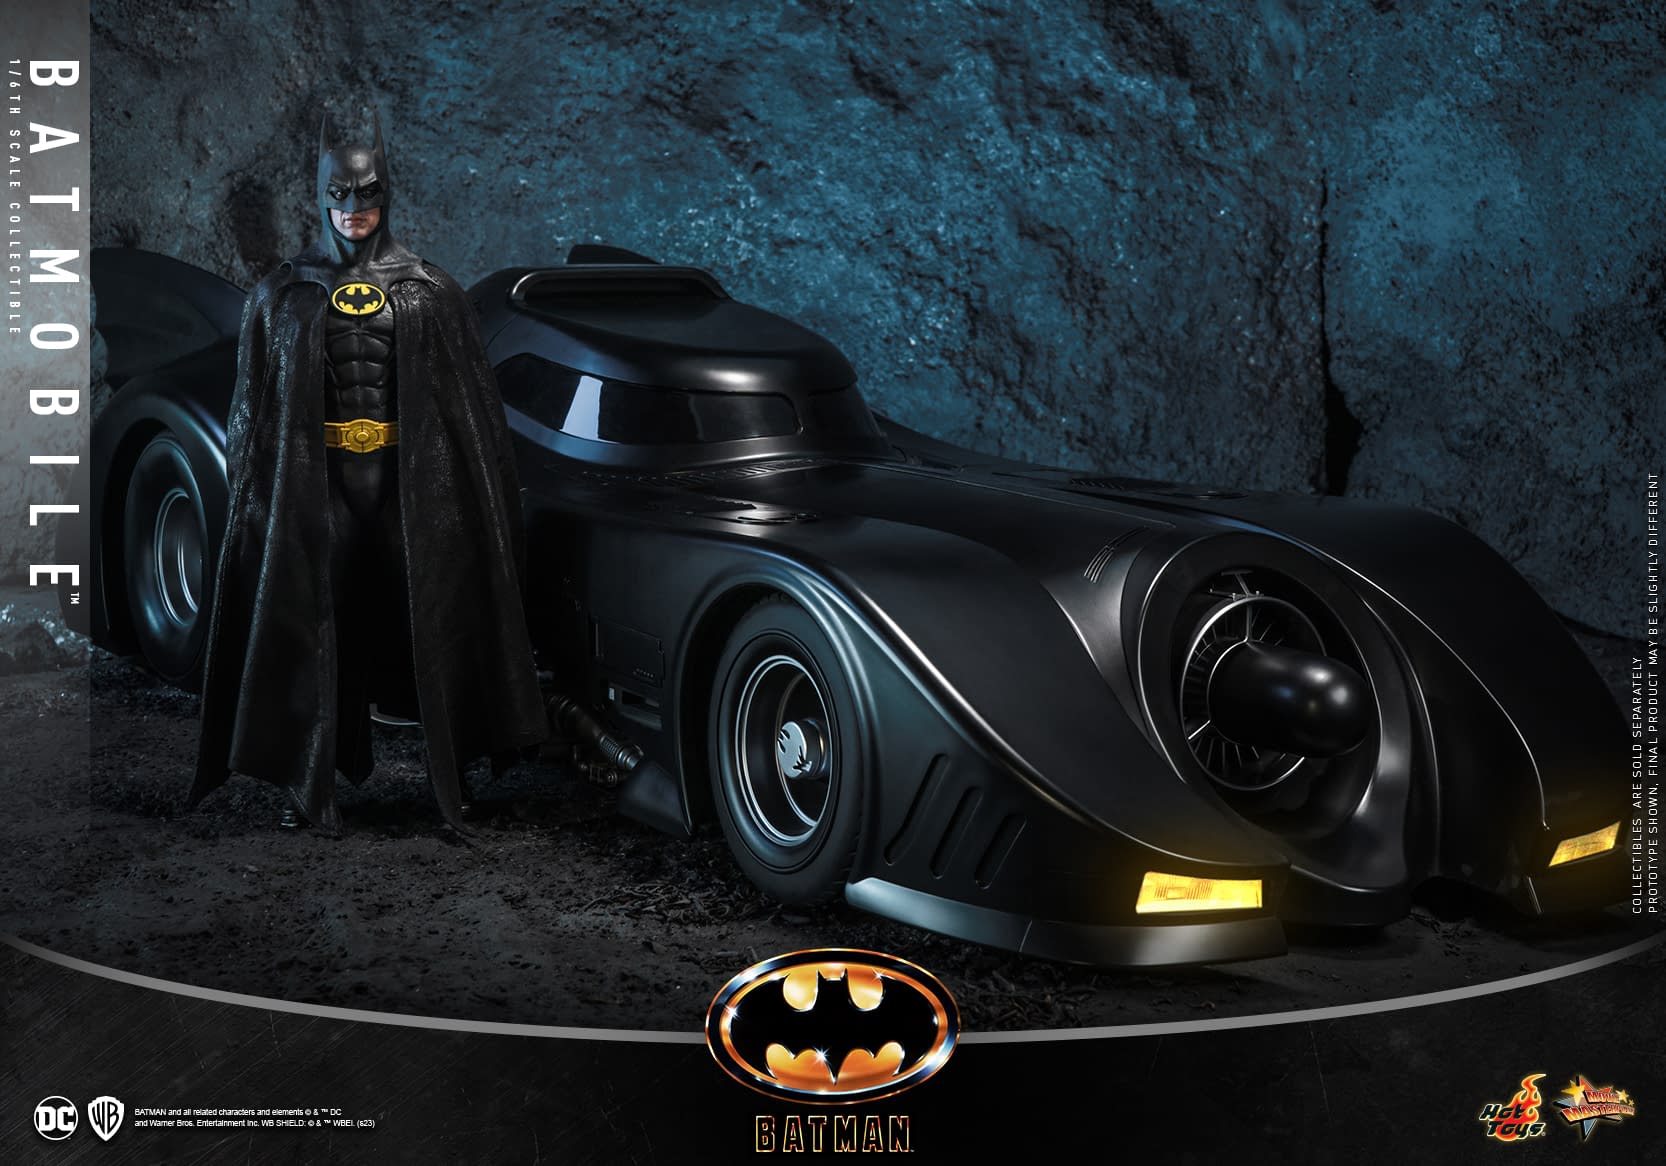 McFarlane Toys announces Burton Batmobile toy